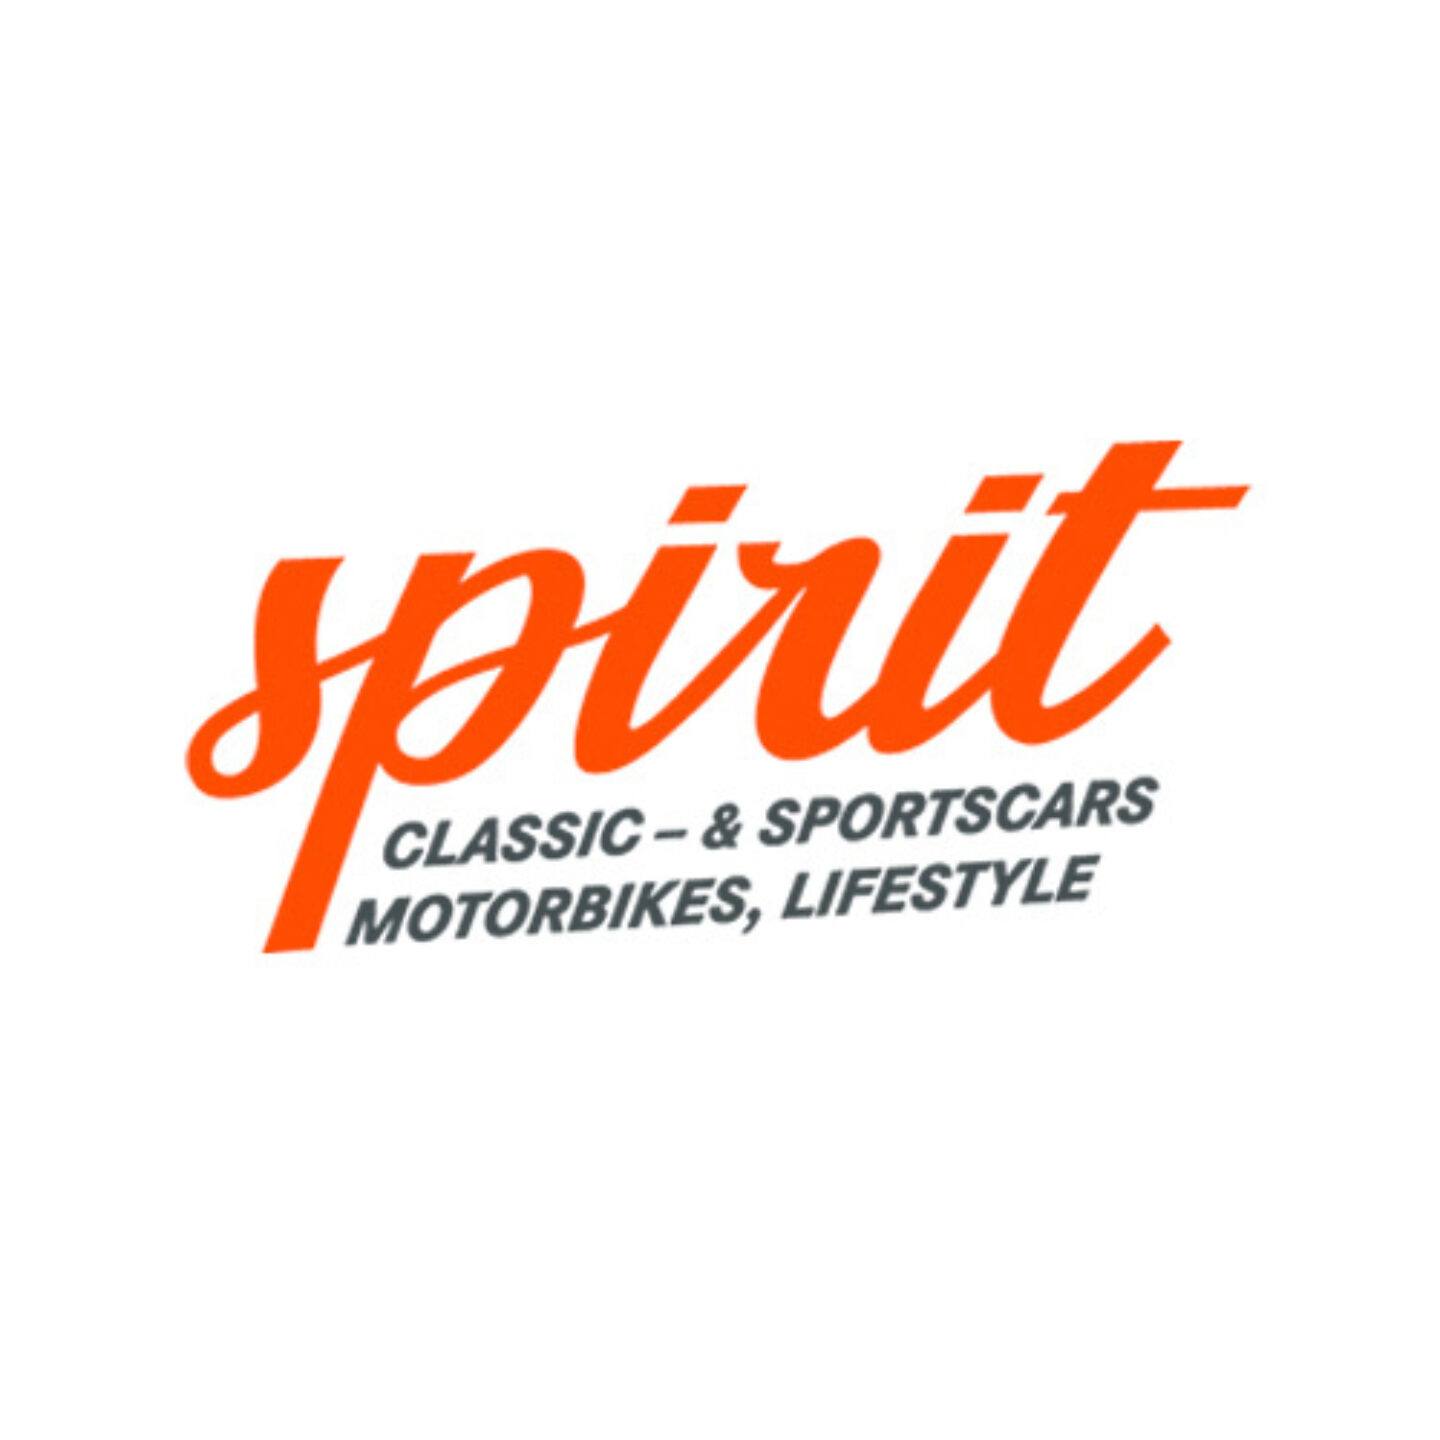 Spirit car magazine